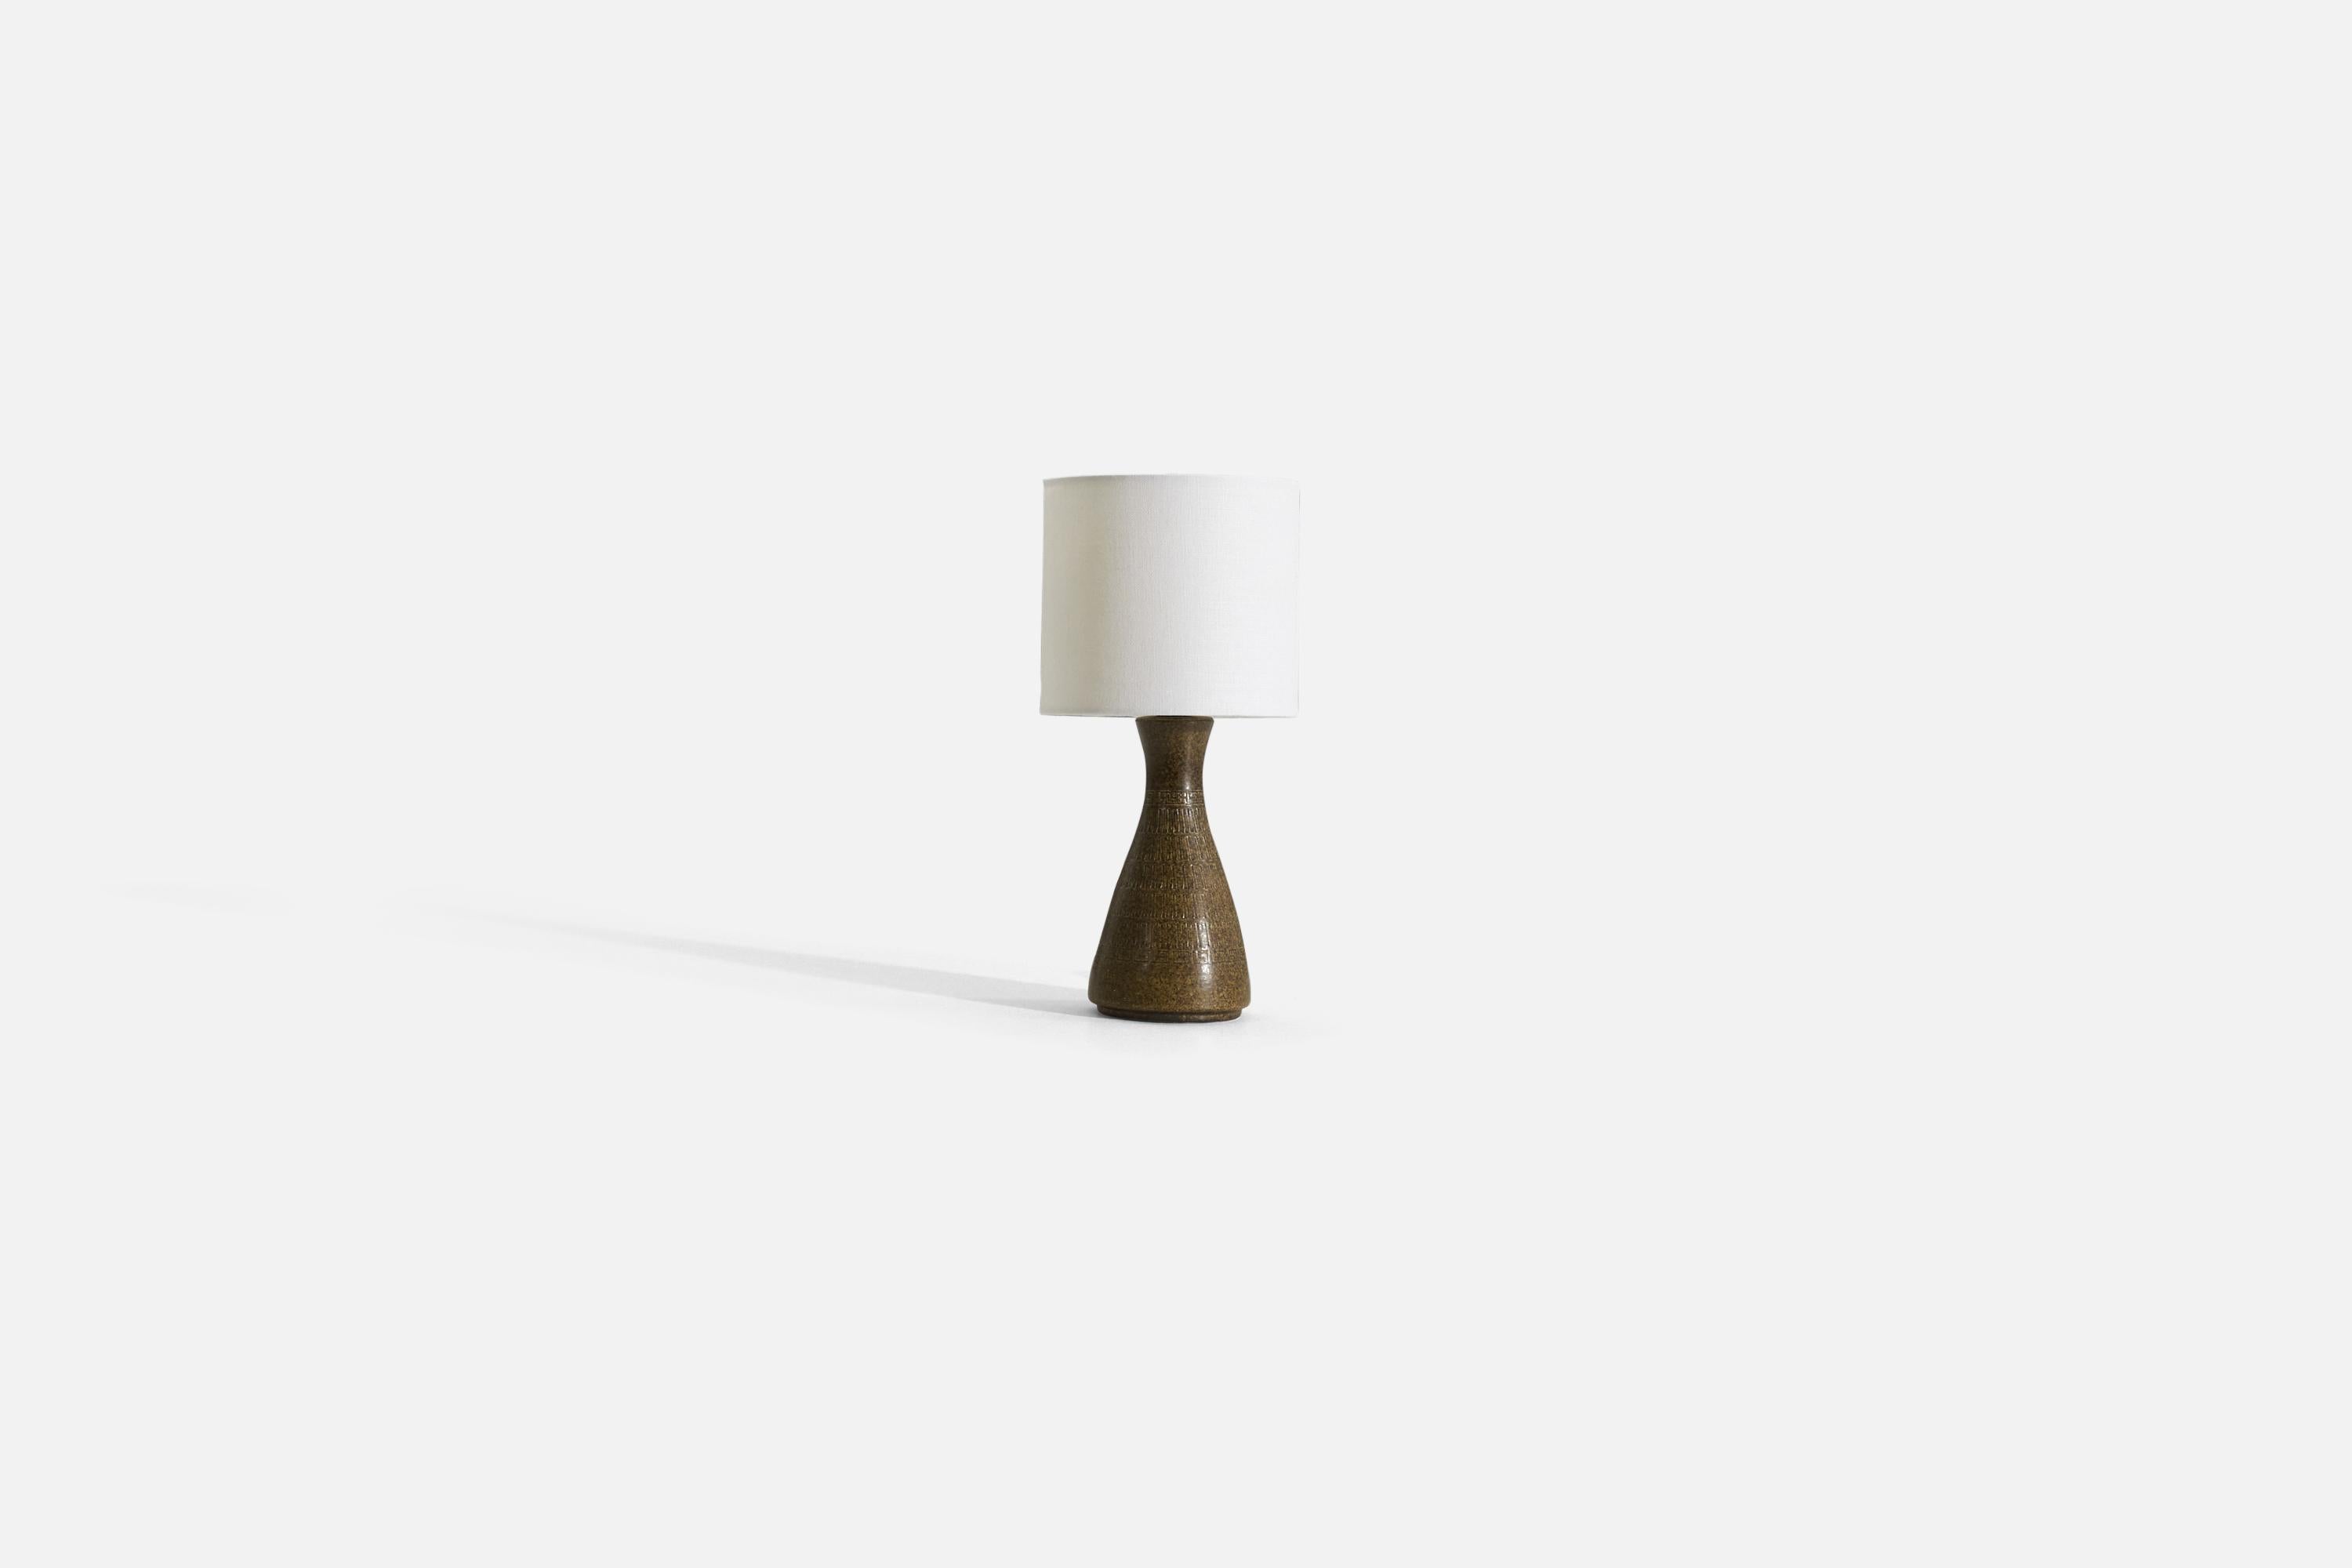 Tischlampe aus braun glasiertem und geritztem Steingut, hergestellt von einem schwedischen Designer, Schweden, 1960er Jahre. 

Verkauft ohne Lampenschirm. 

Die angegebenen Maße beziehen sich auf die Lampe.
Schirm : 6 x 6 x 5,5
Lampe mit